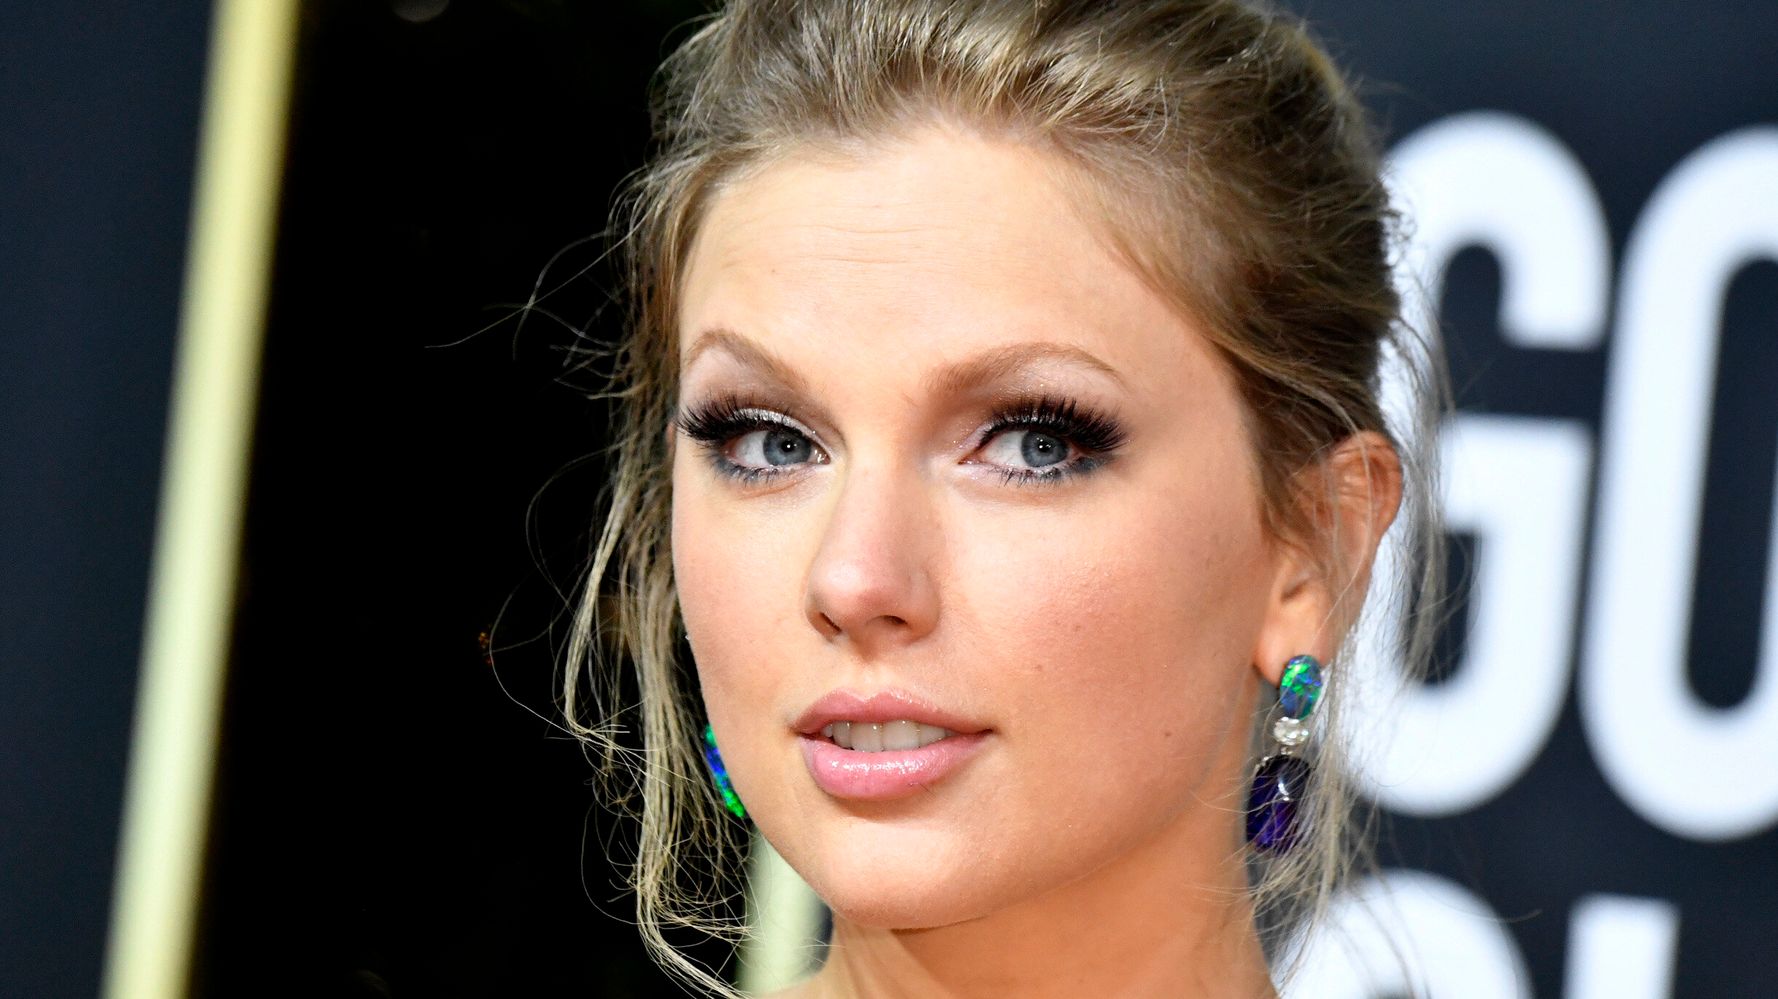 泰勒·斯威夫特 (Taylor Swift) 的粉丝可能会在“爱情故事”视频中向踏板车布劳恩 (Scooter Braun) 点头致意